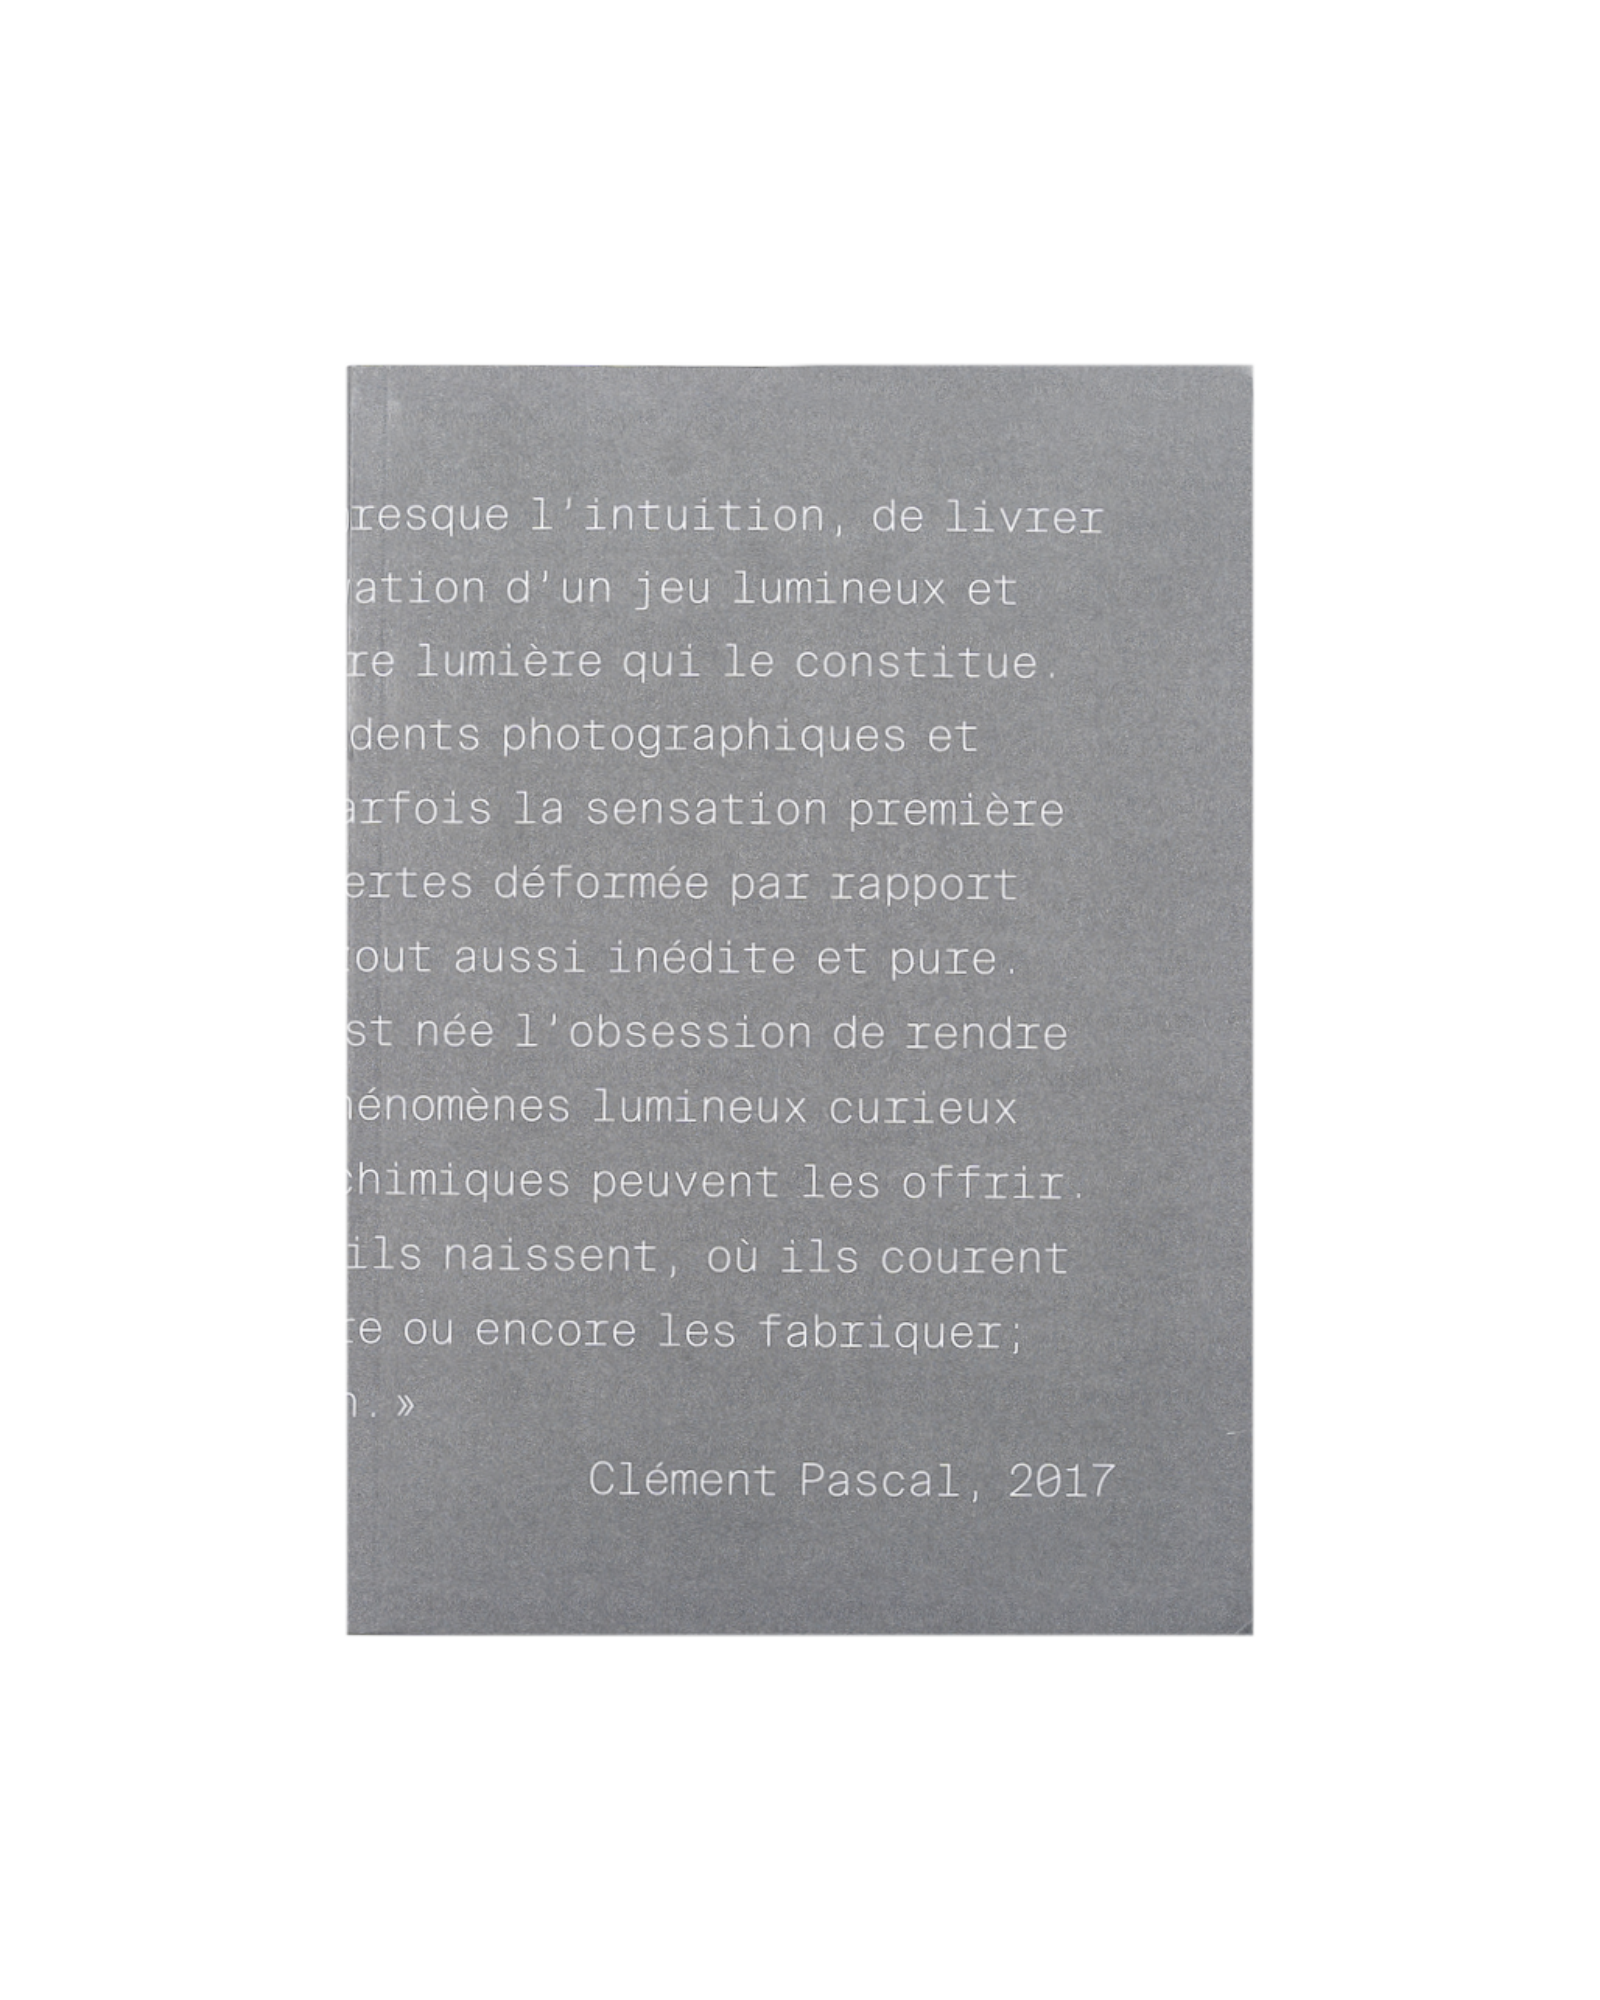 Classic Paris - Book - Clément Pascal - 2017